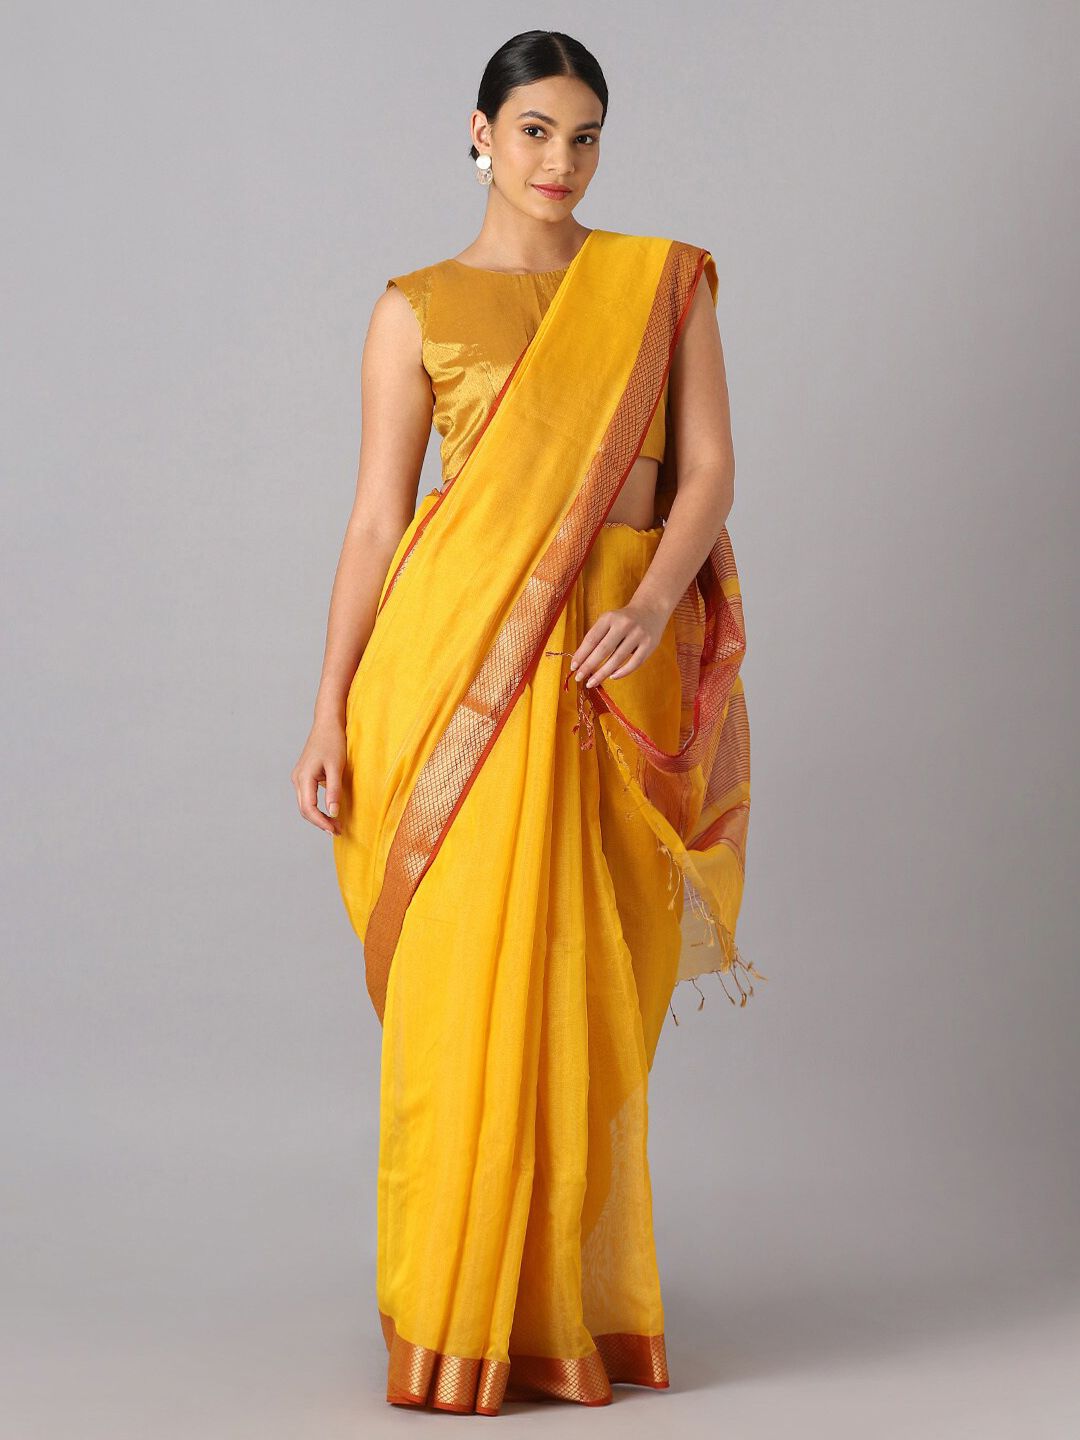 Taneira Yellow & Gold-Toned Zari Tissue Maheshwari Saree Price in India